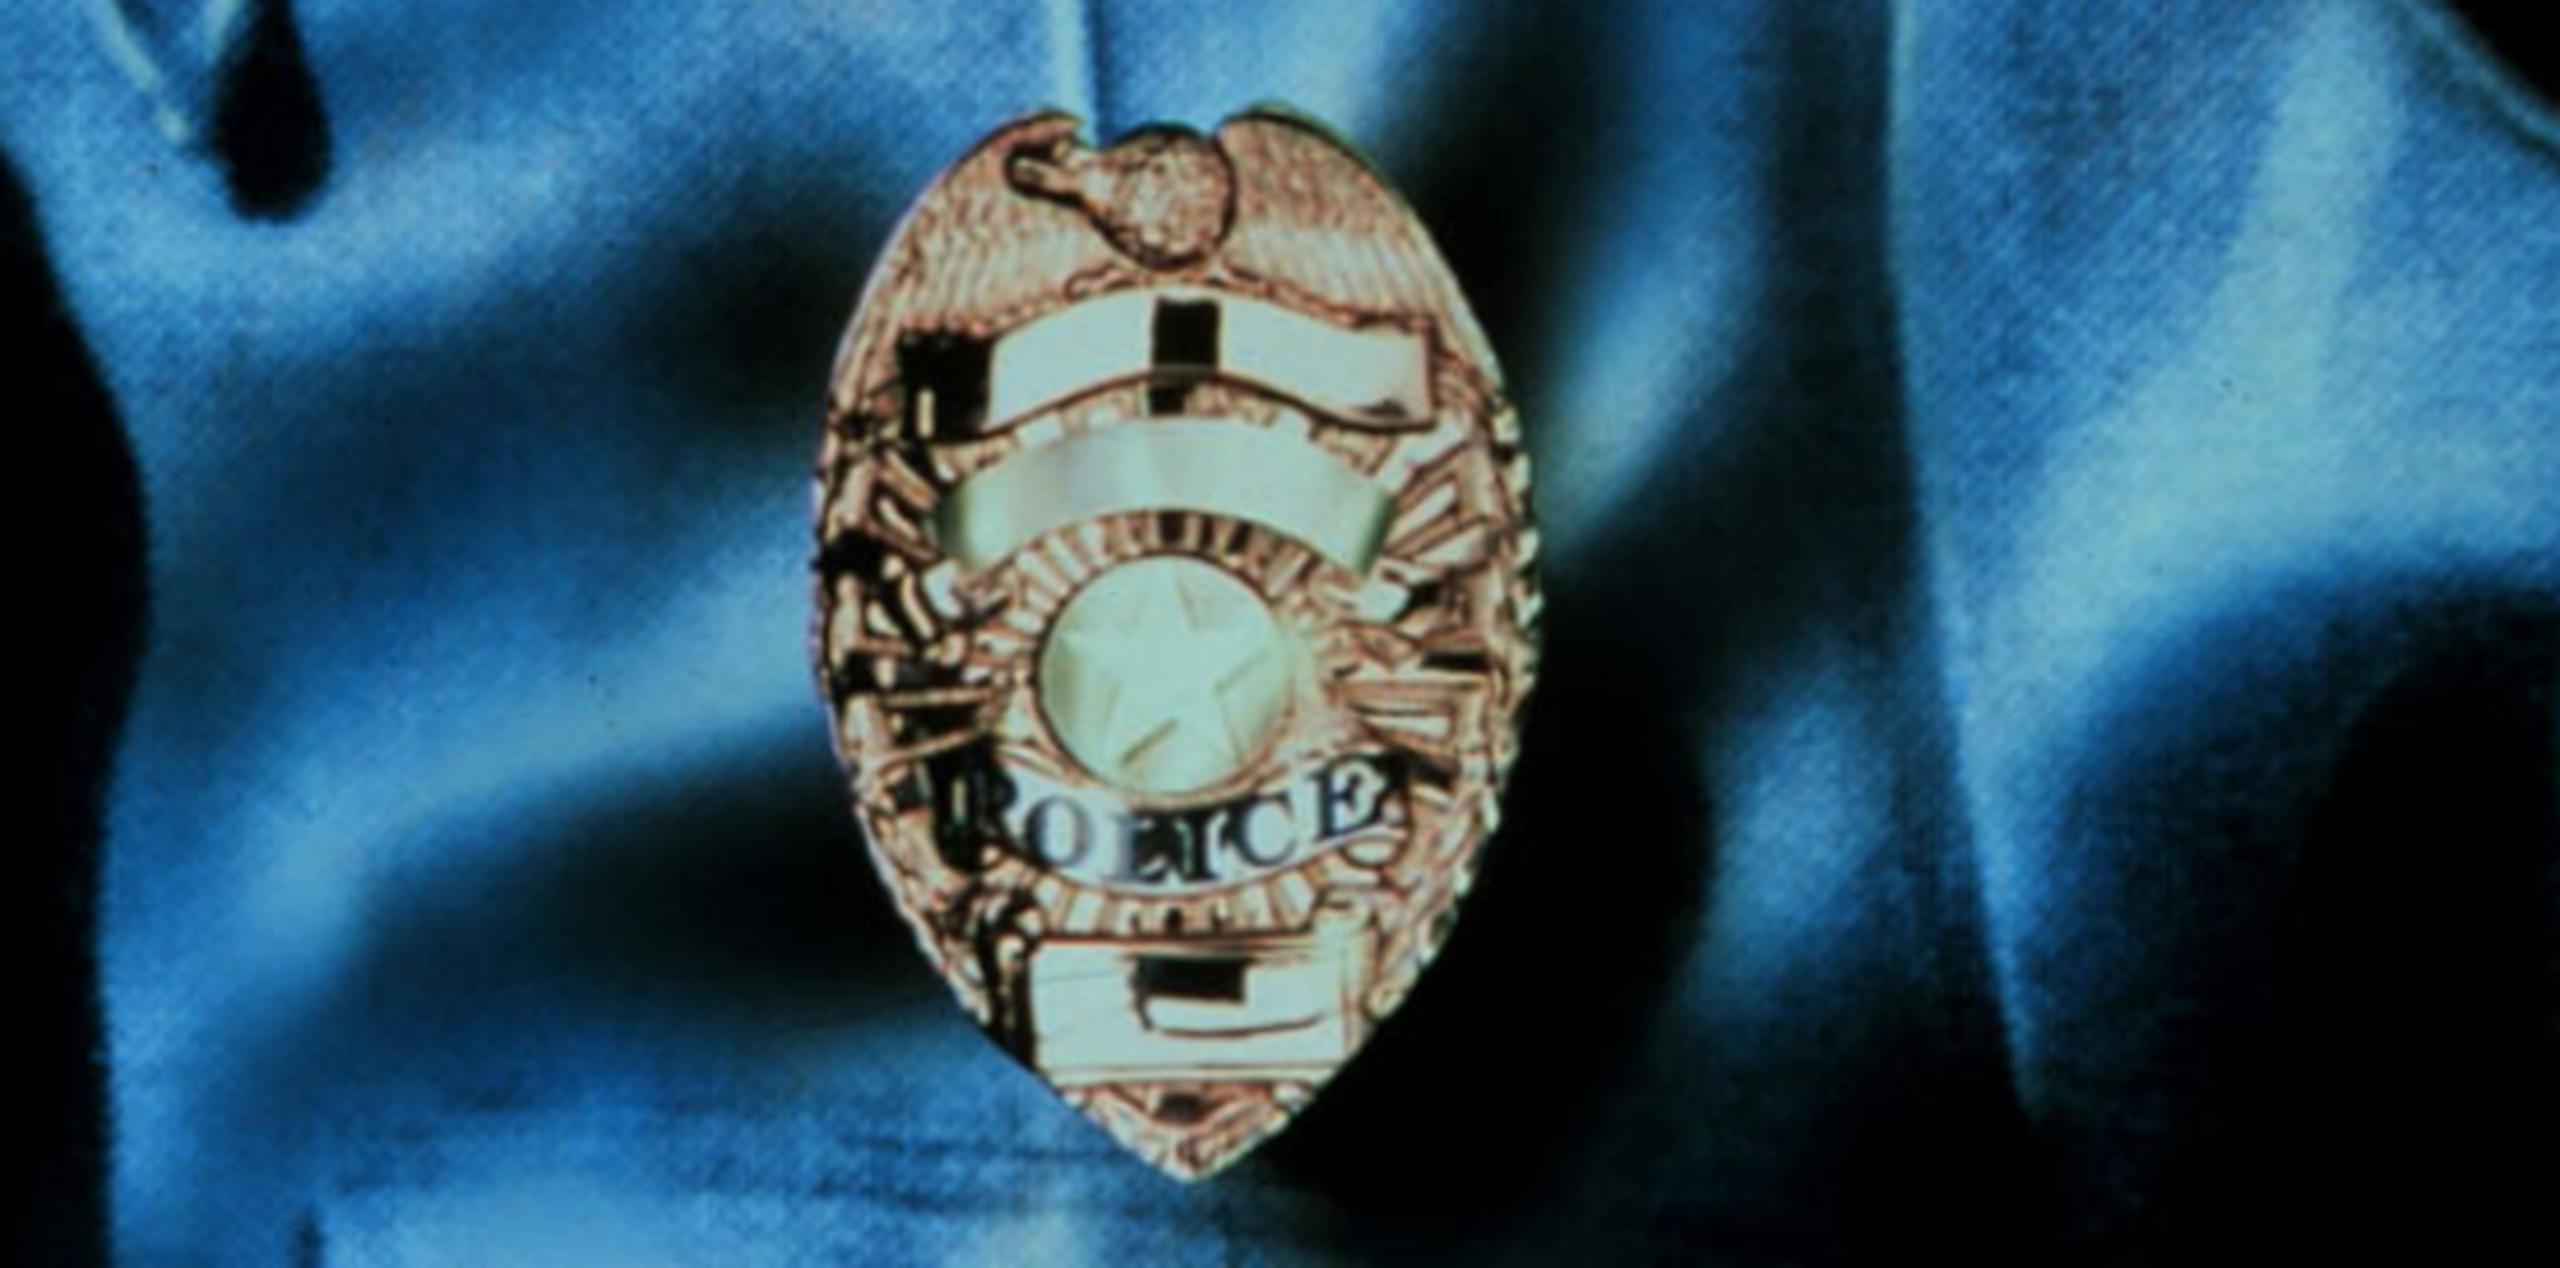 Uno de los consejos para evitar ser víctima de un robo por parte de alguien disfrazado de policía, es conocer los emblemas oficiales que distinguen a la Policía. (Archivo)